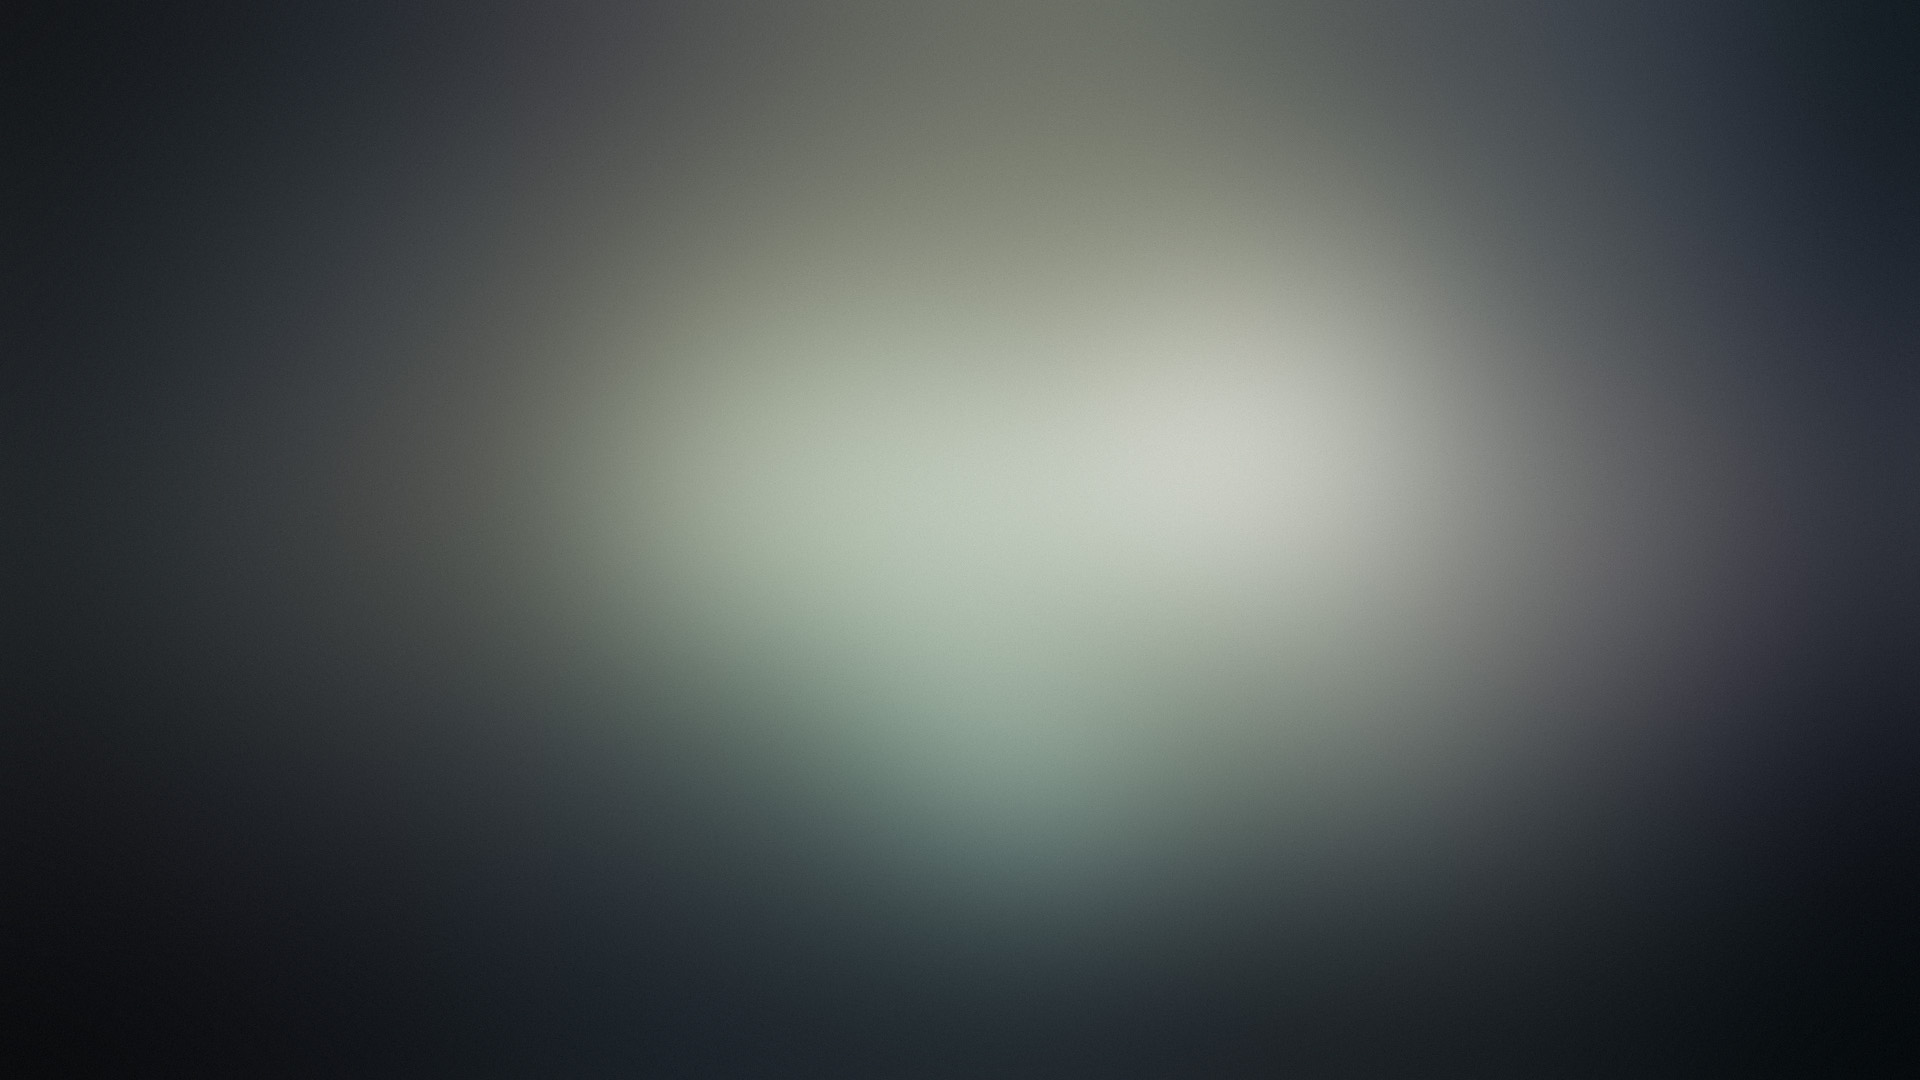 minimalistic, gaussian blur - desktop wallpaper